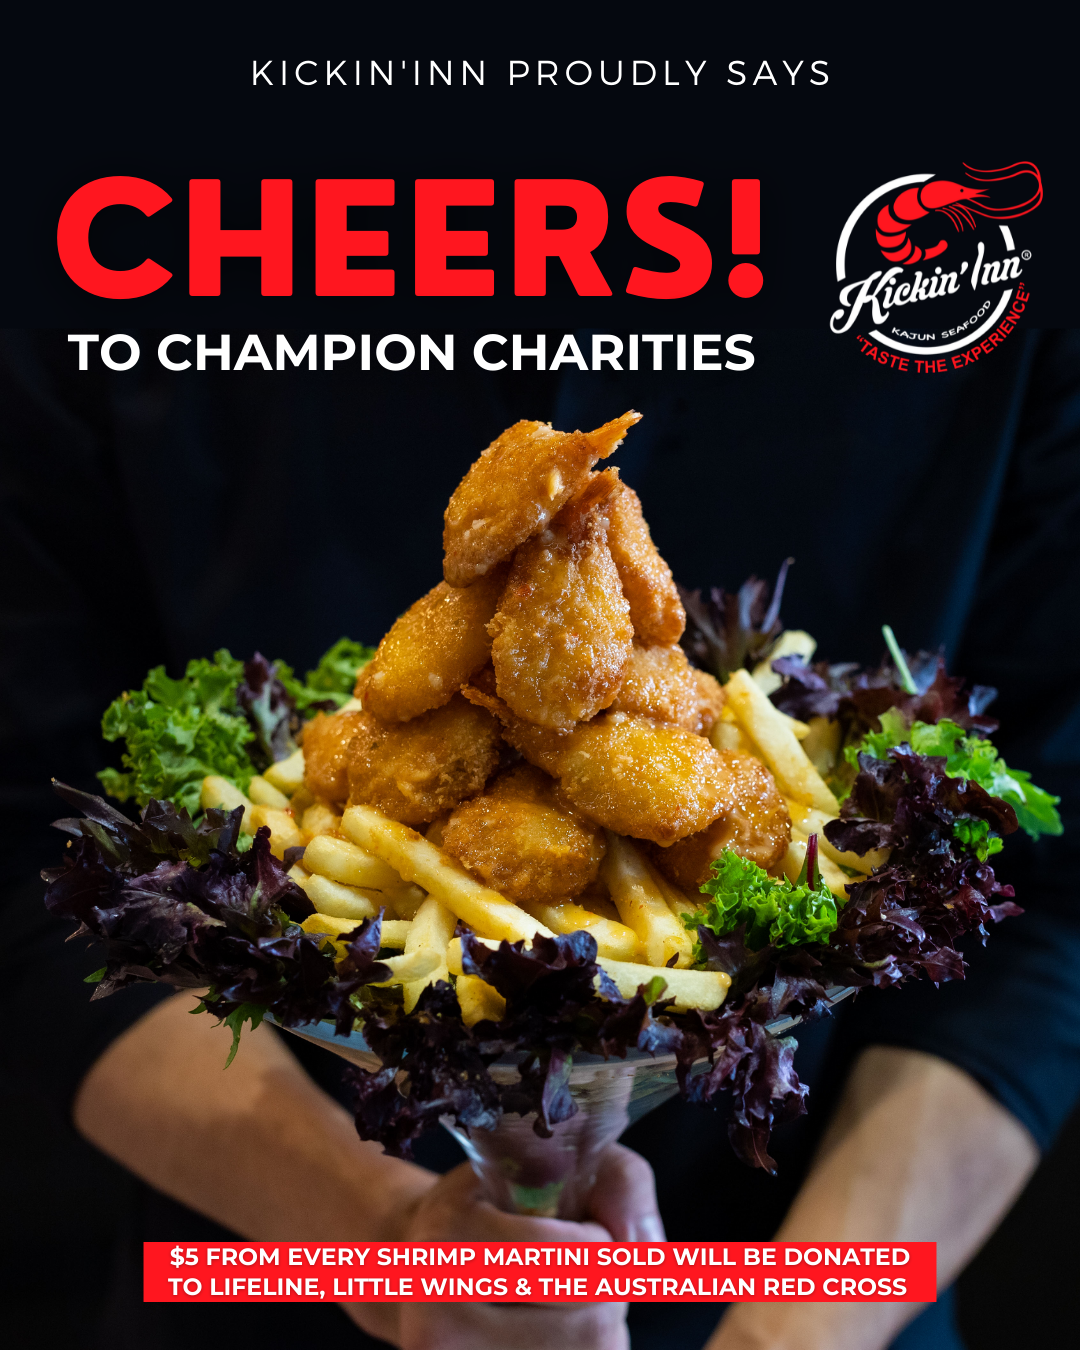 Kickin’Inn proudly says ‘CHEERS’ to champion charities 🥂